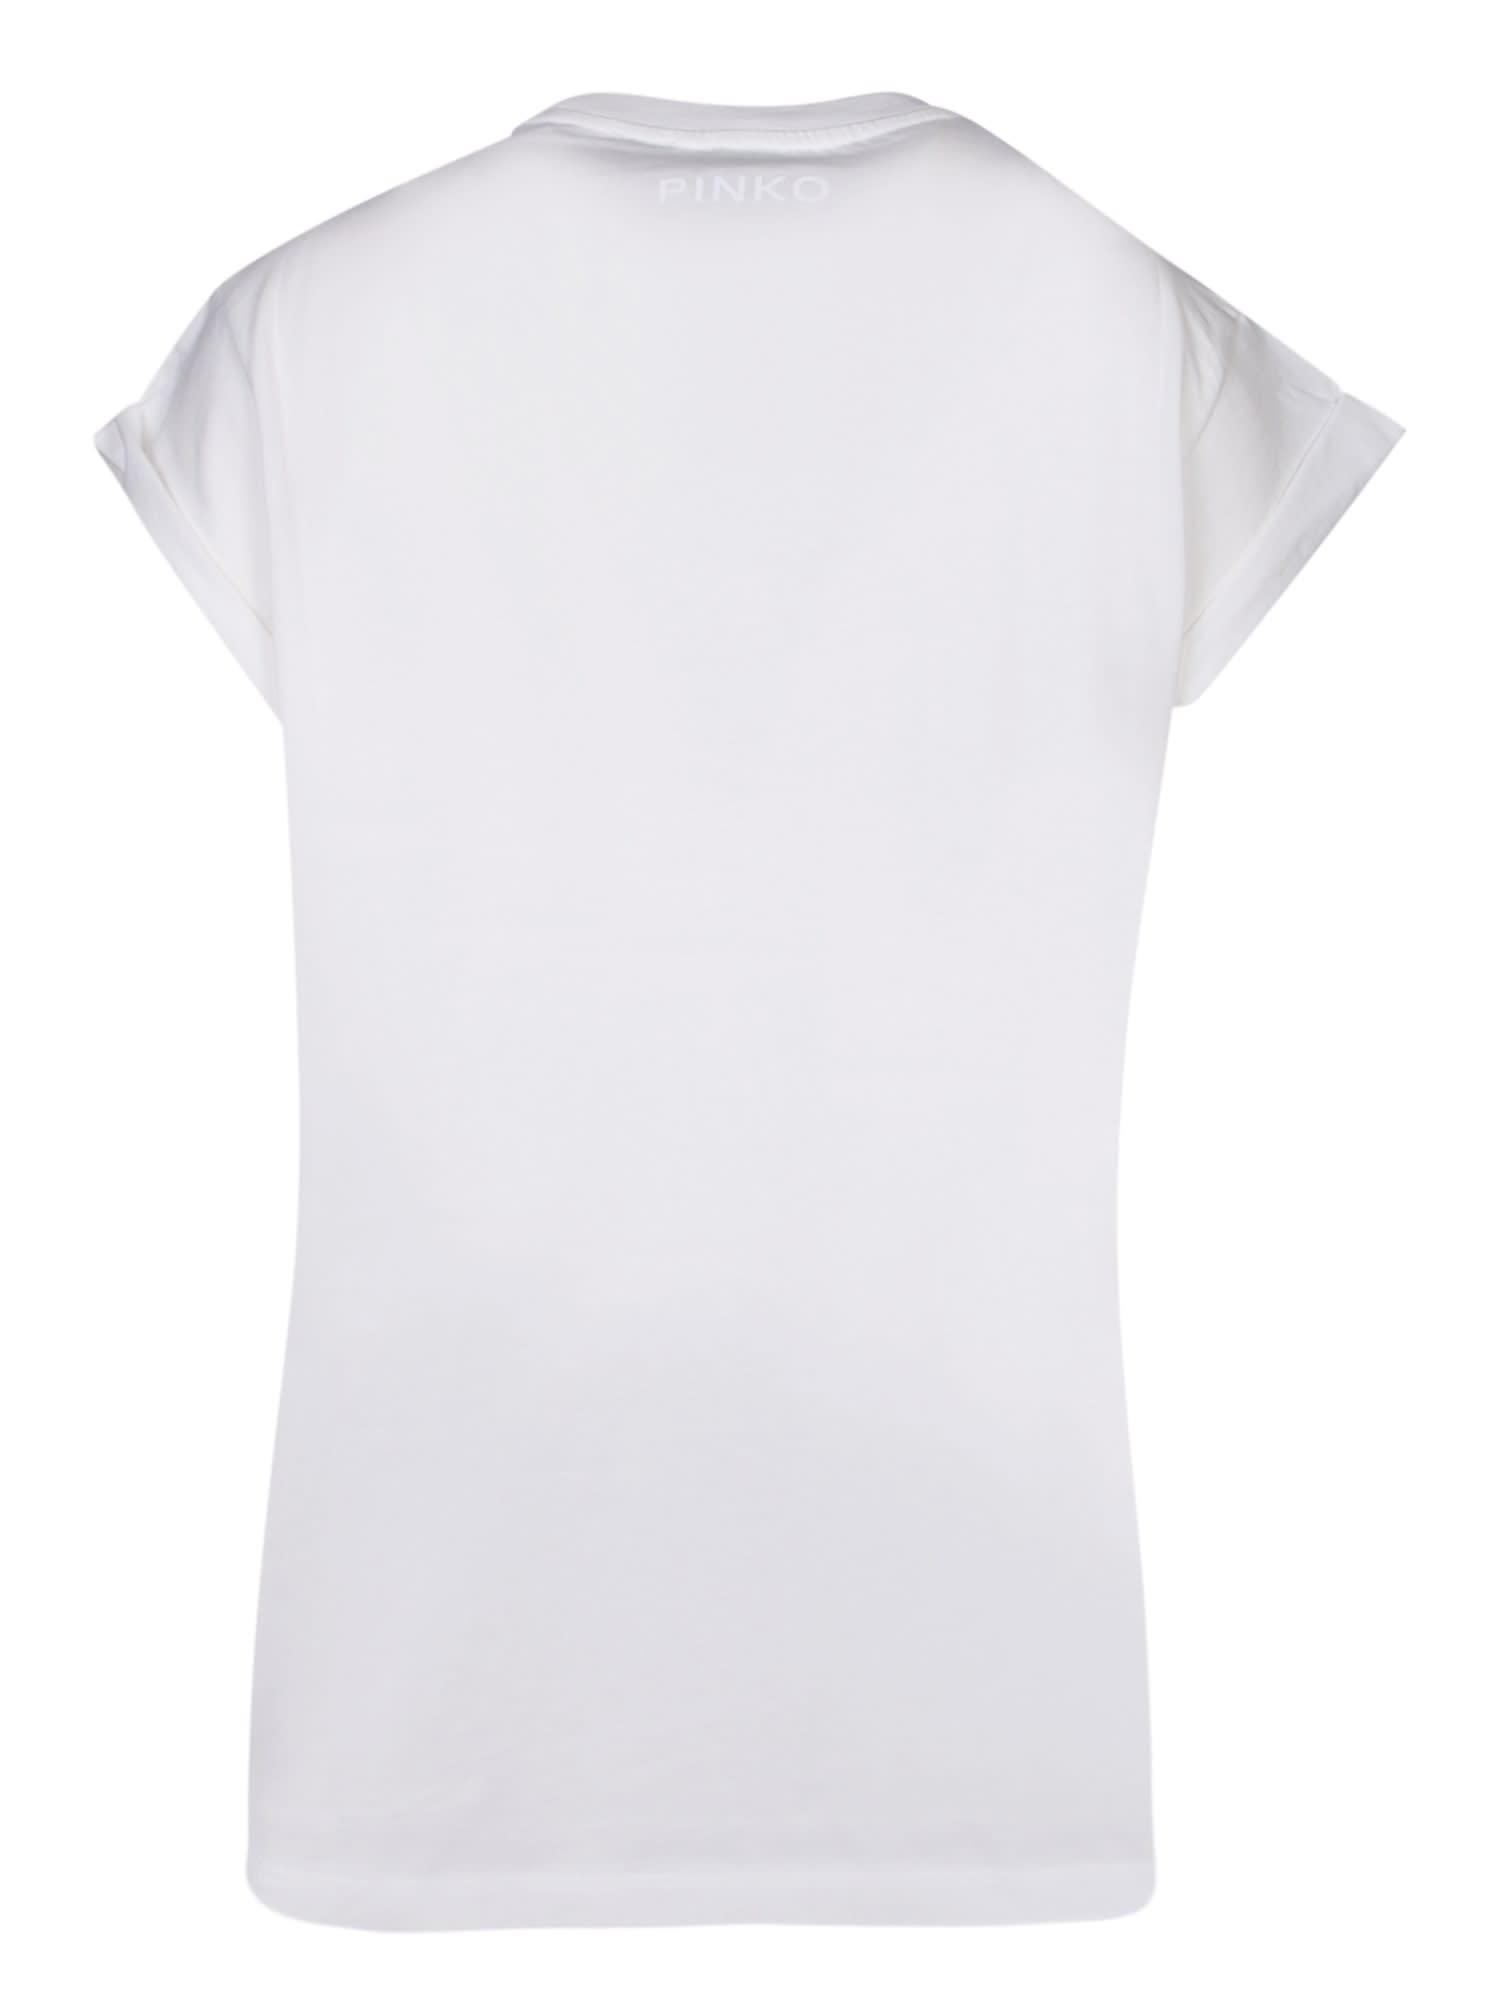 Shop Pinko Telesto White T-shirt